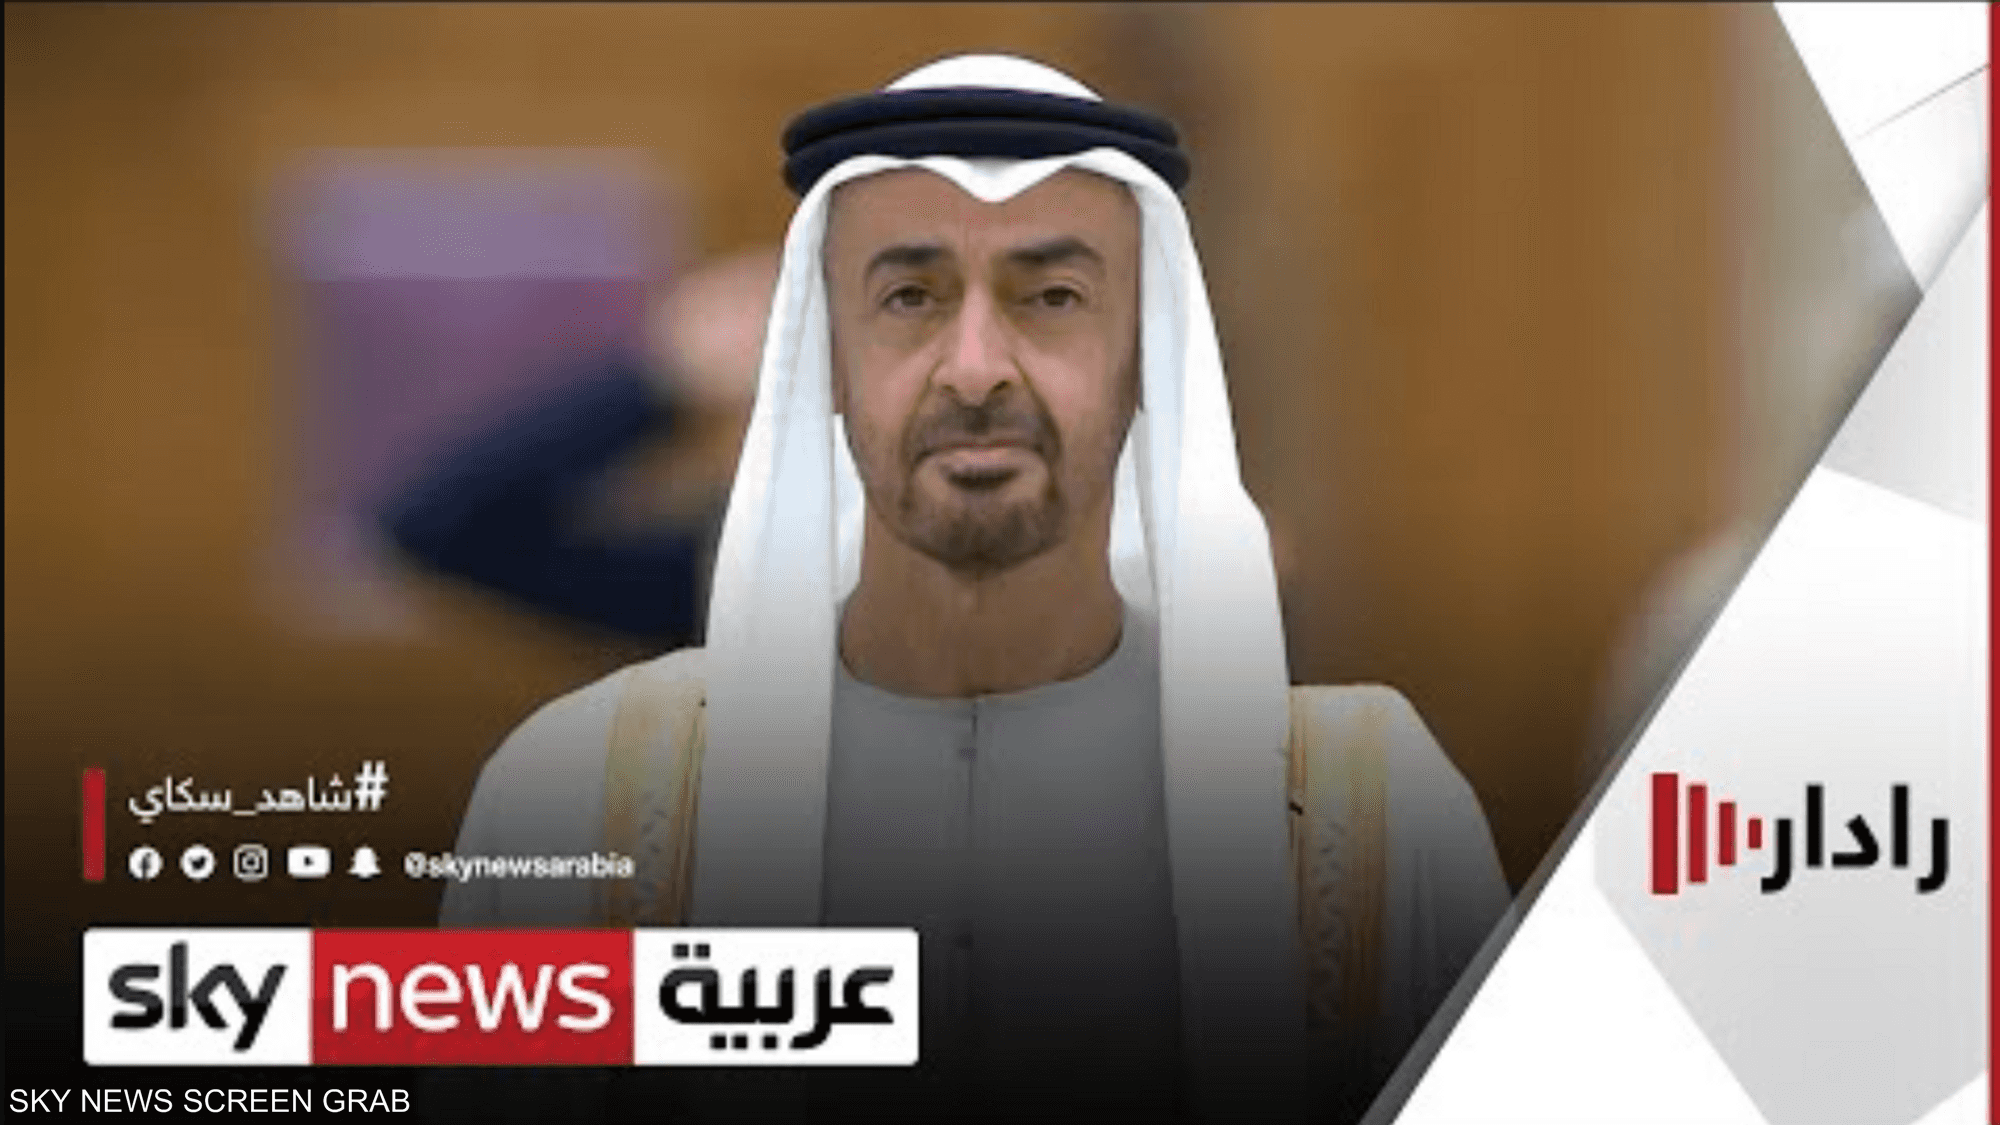 زعماء وقادة يهنئون الشيخ محمد بن زايد لانتخابه رئيسا للدولة